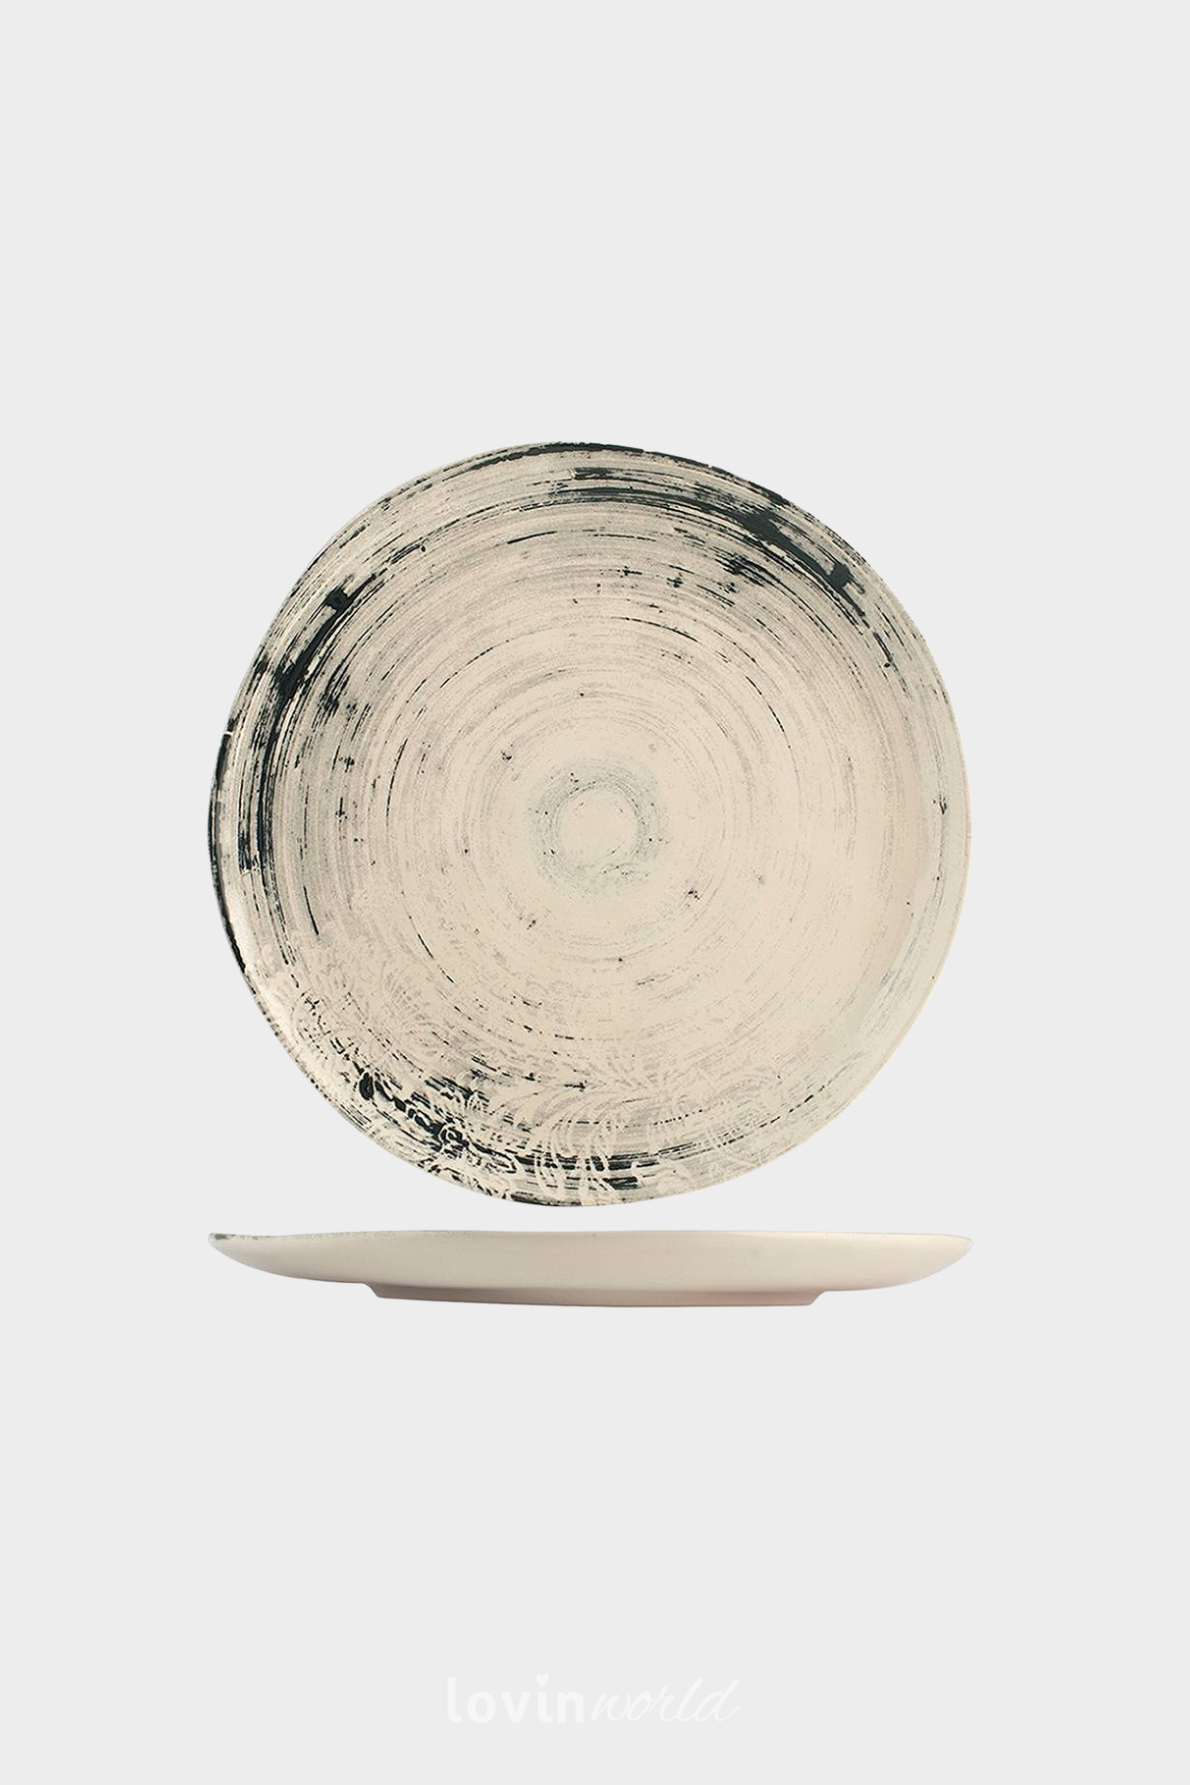 Piatto frutta Silk in stoneware in colore beige 21 cm.-1